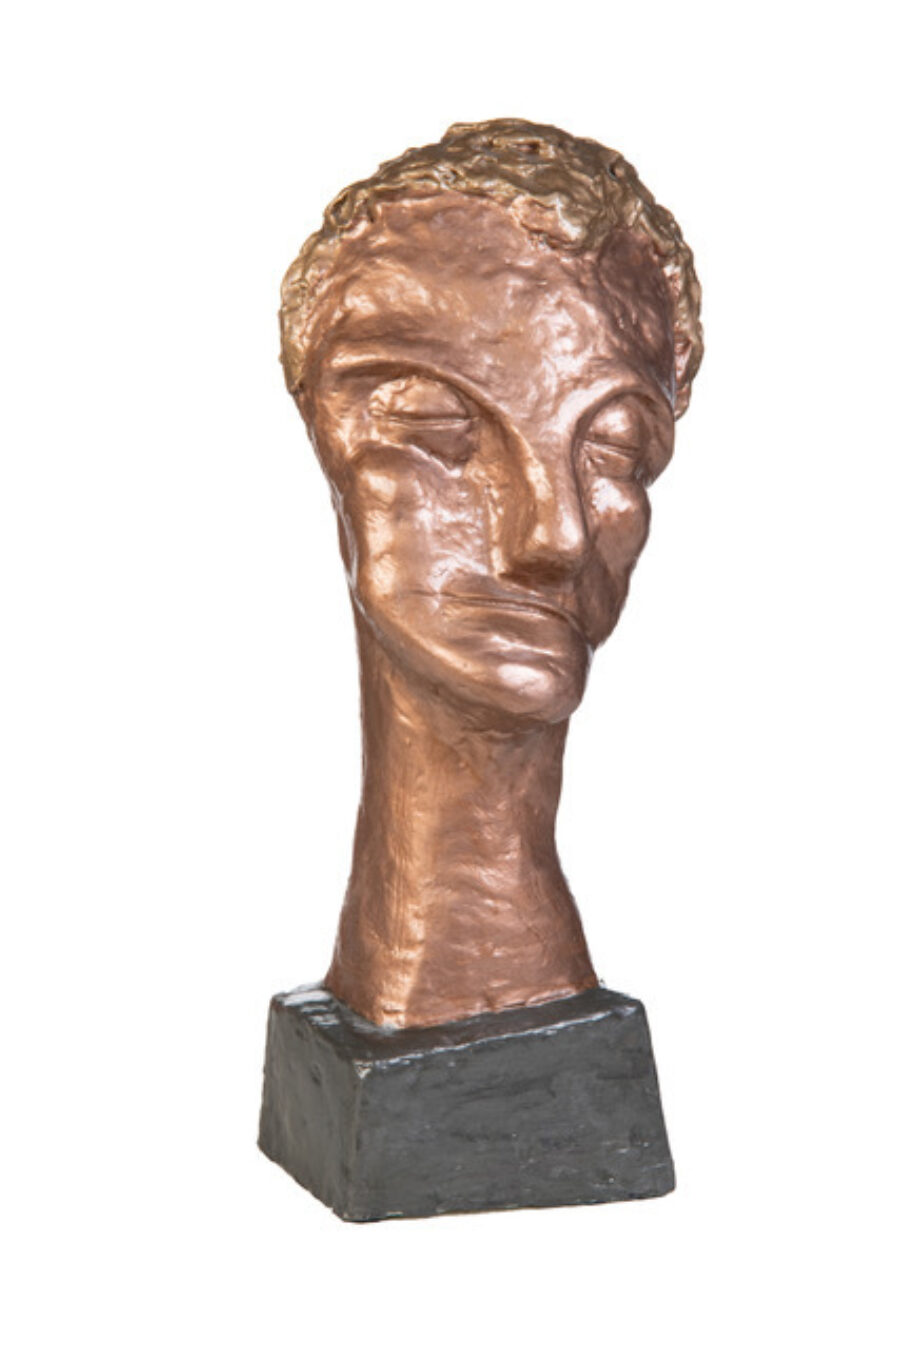 Das Bild zeigt eine Skulptur vor weissem Hintergrund. Die Skulptur ist braun und glänzt. Sie stellt ein Gesicht dar, mit kurzen Haaren, grossen geschlossenen Augen, einer grossen Nase und einem geschlossenen Mund. Die Skulptur steht auf einem schwarzen Sockel.